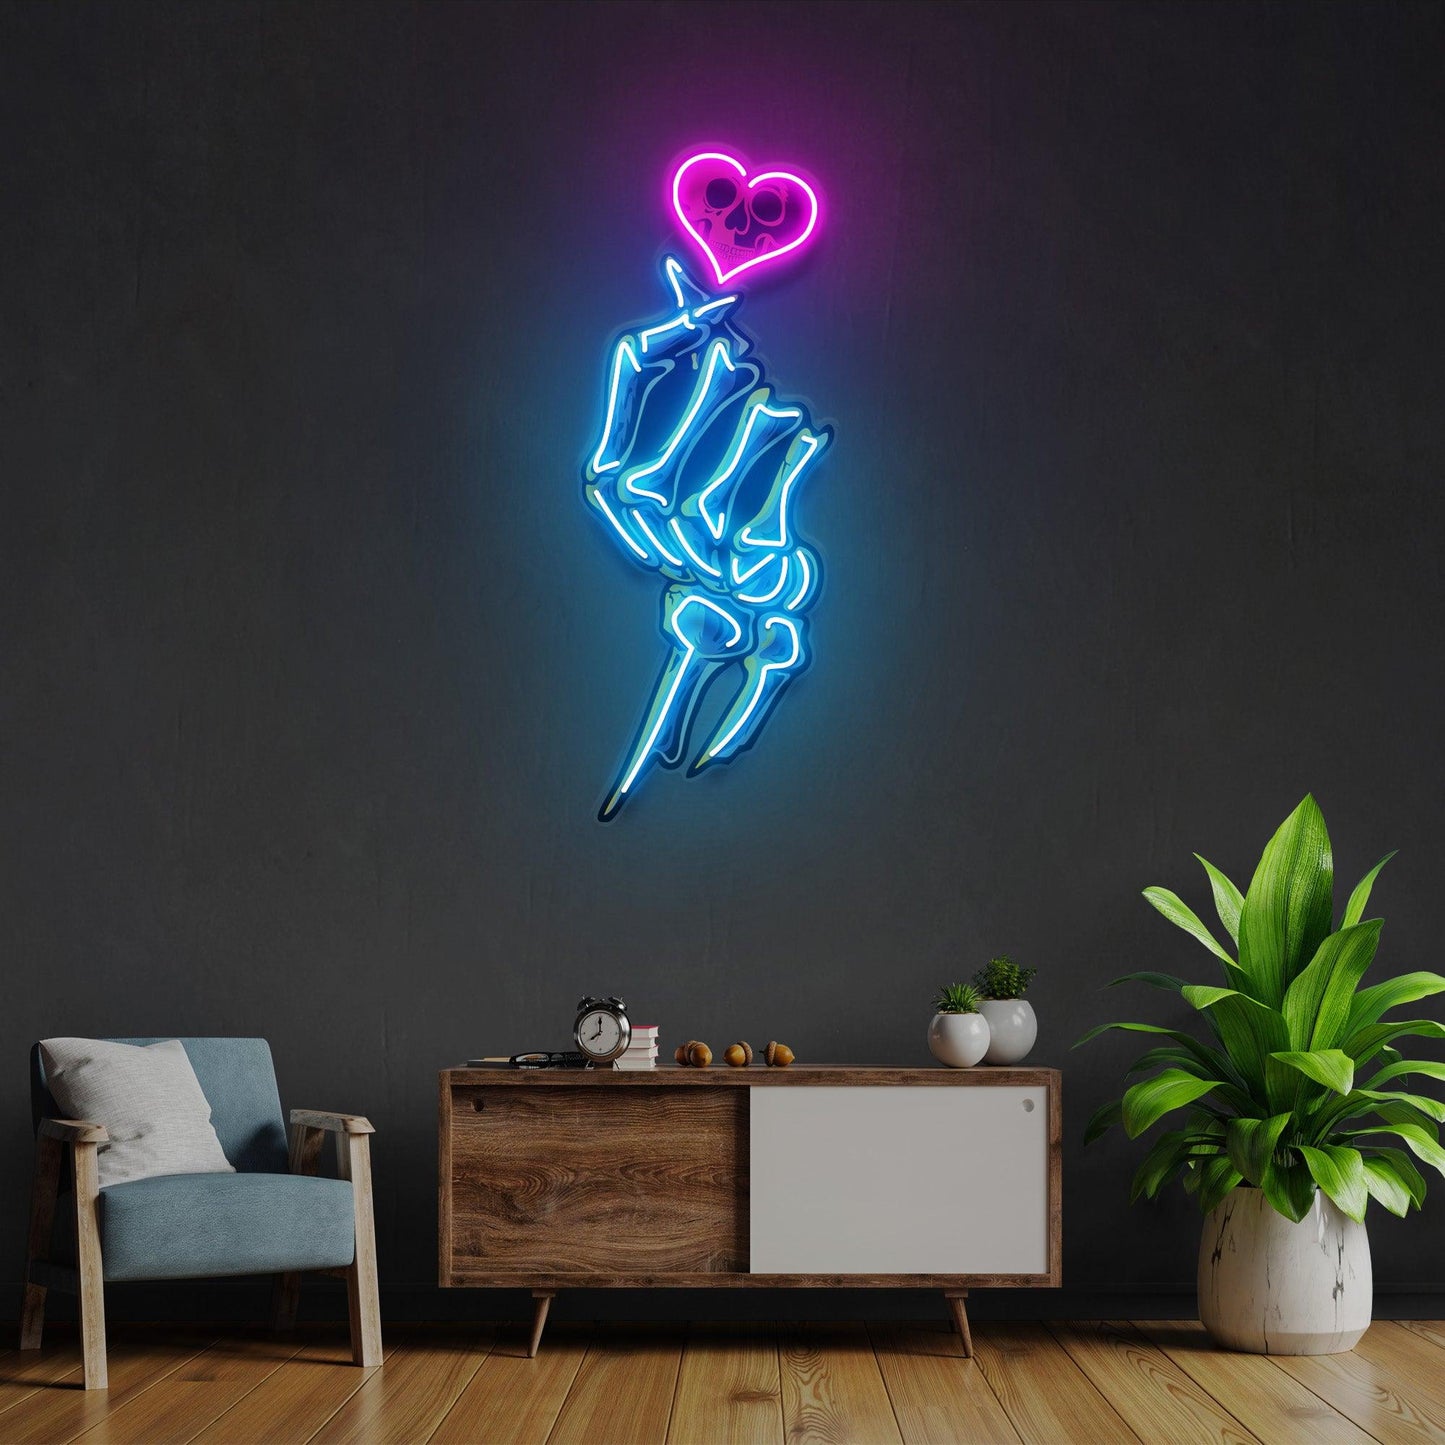 Love Hands Led Neon Acrylic Artwork - Neonzastudio